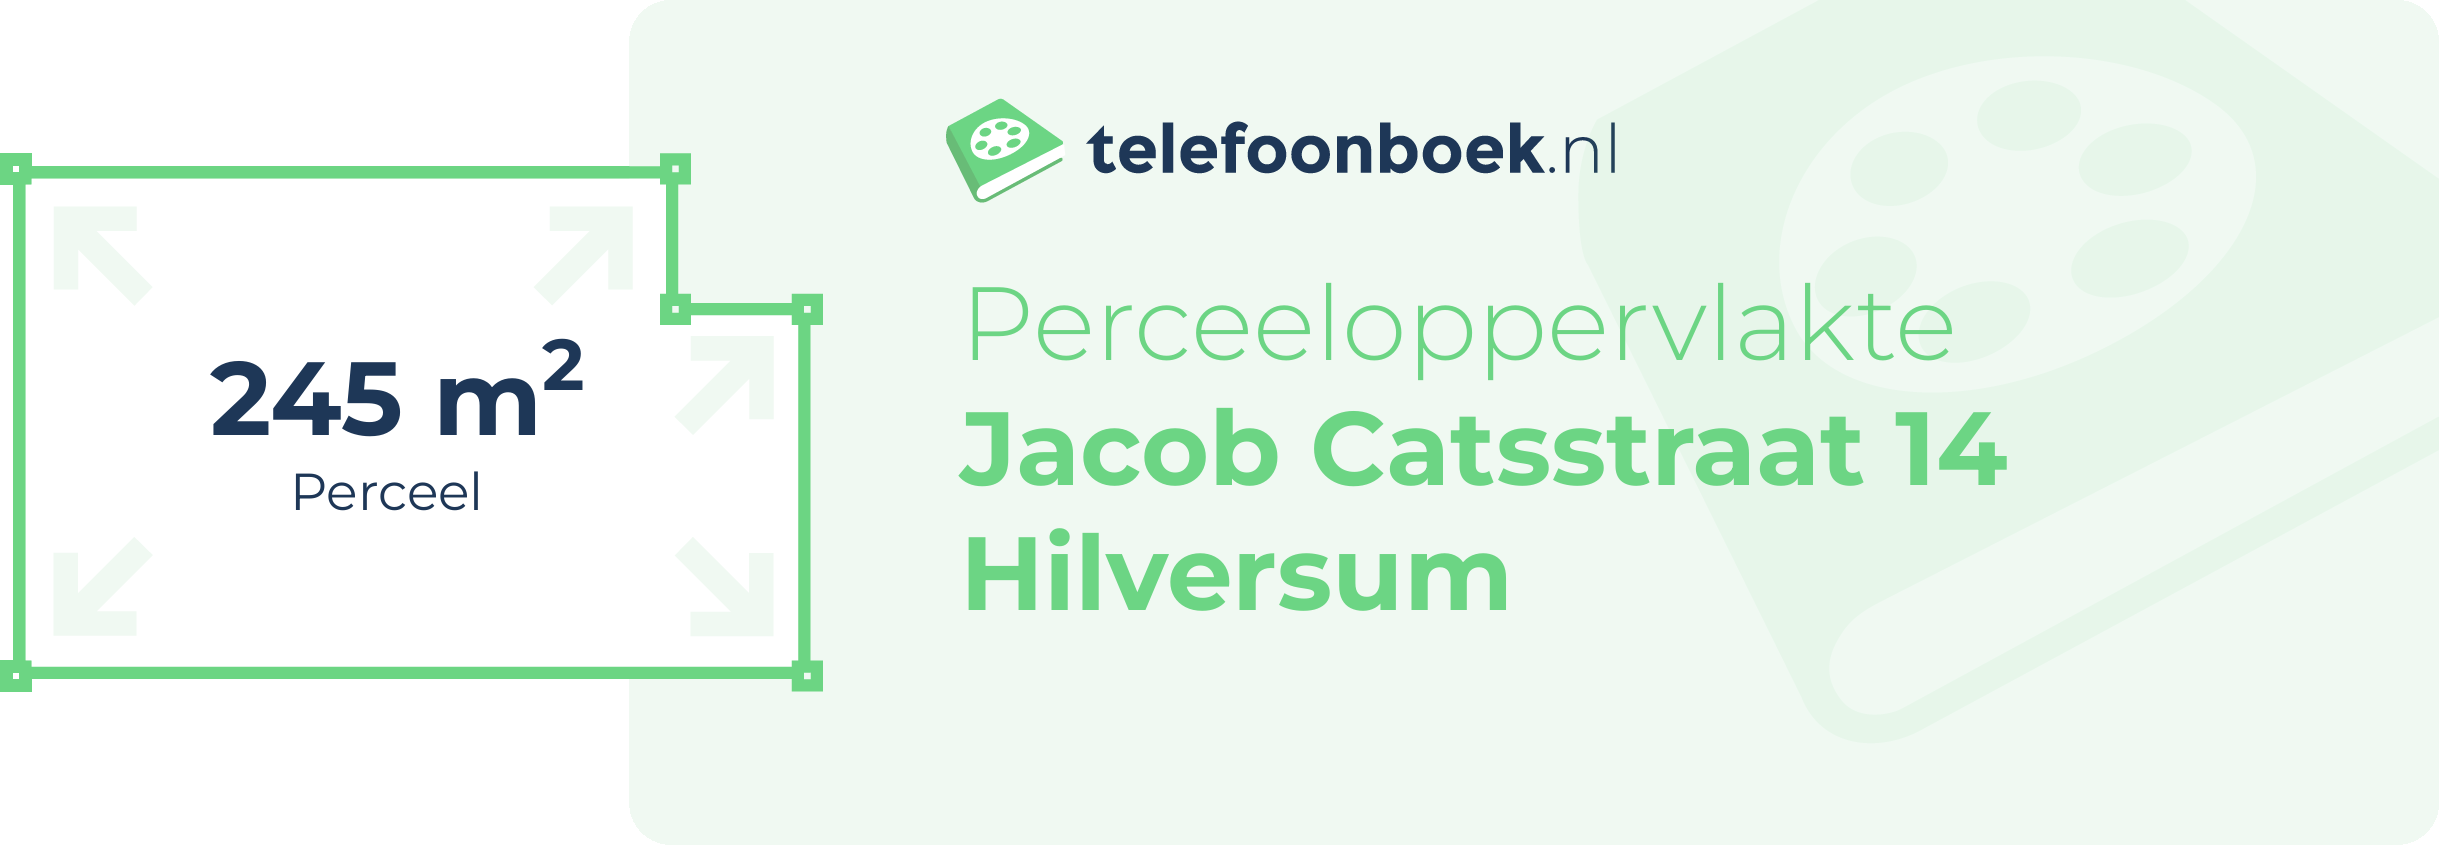 Perceeloppervlakte Jacob Catsstraat 14 Hilversum